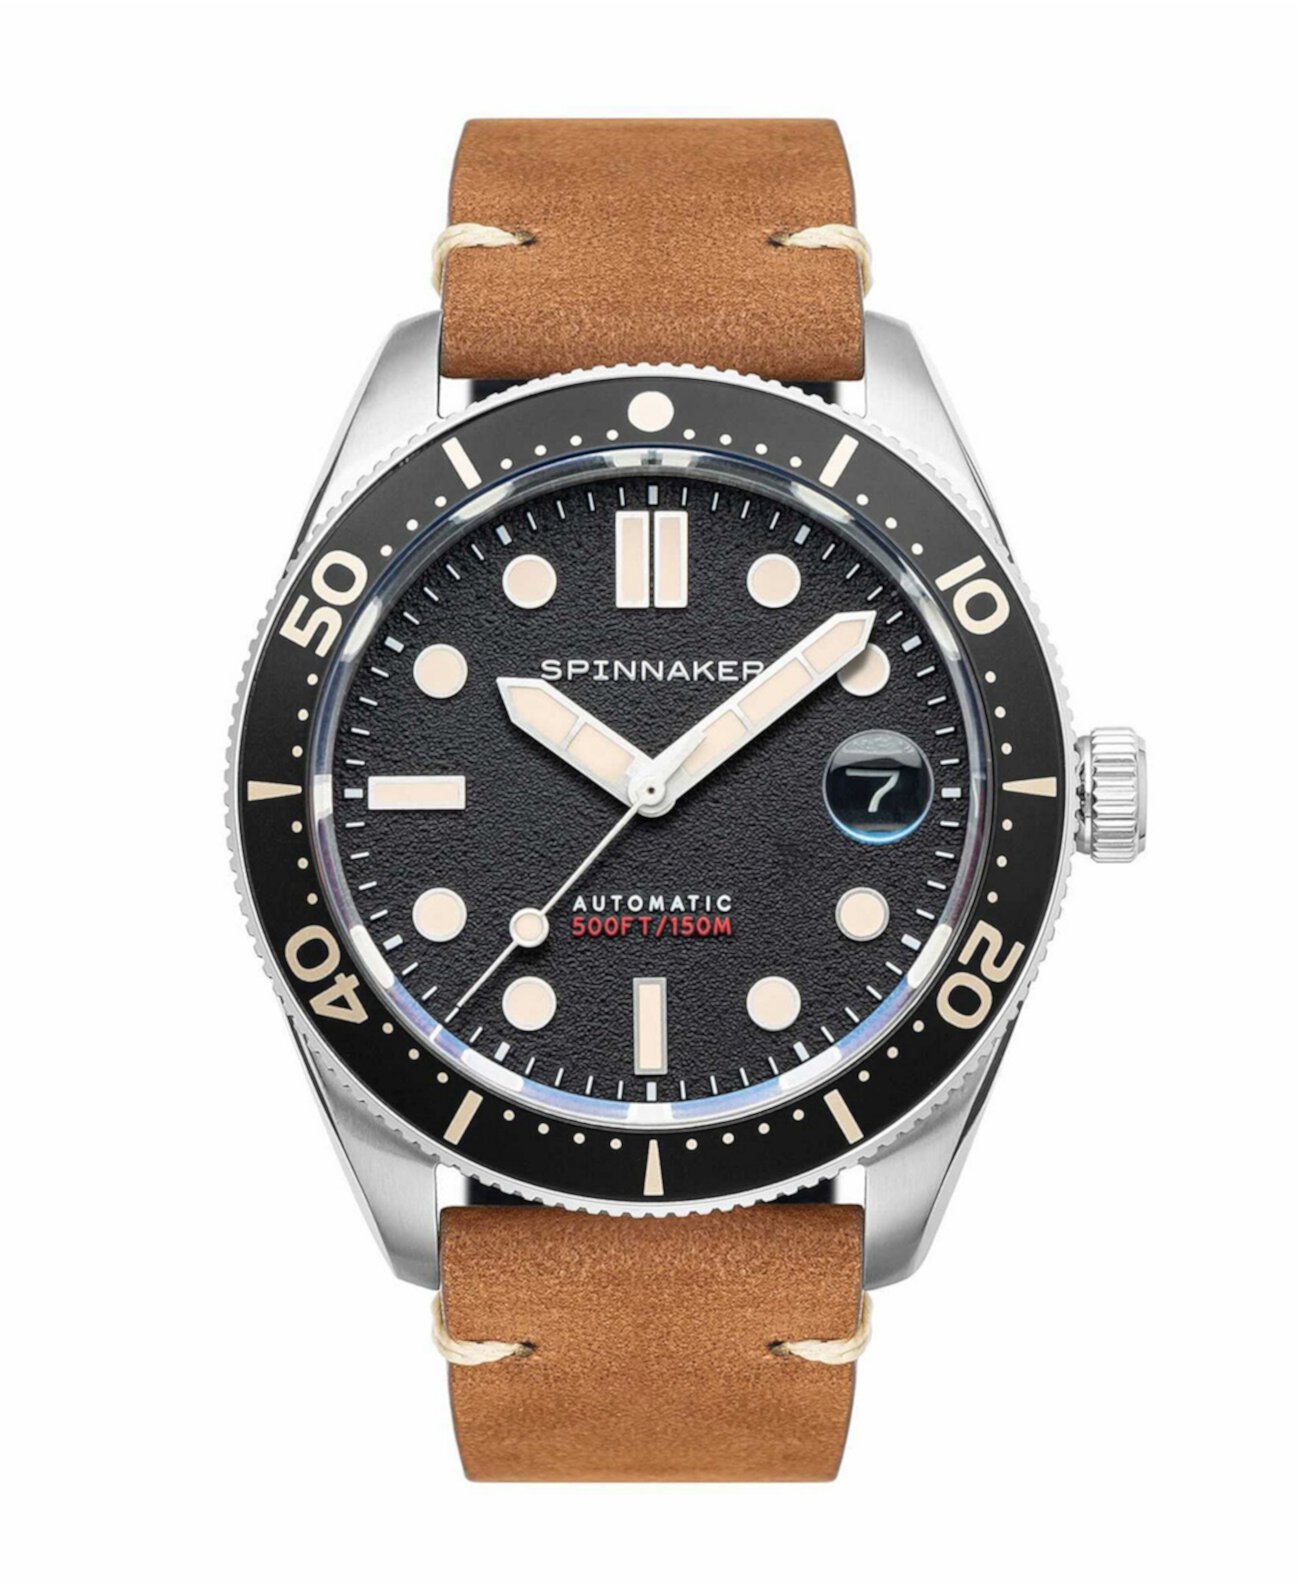 Мужские часы Croft среднего размера с автоматическим якорем, черные с коричневым ремешком из натуральной кожи, 40 мм Spinnaker